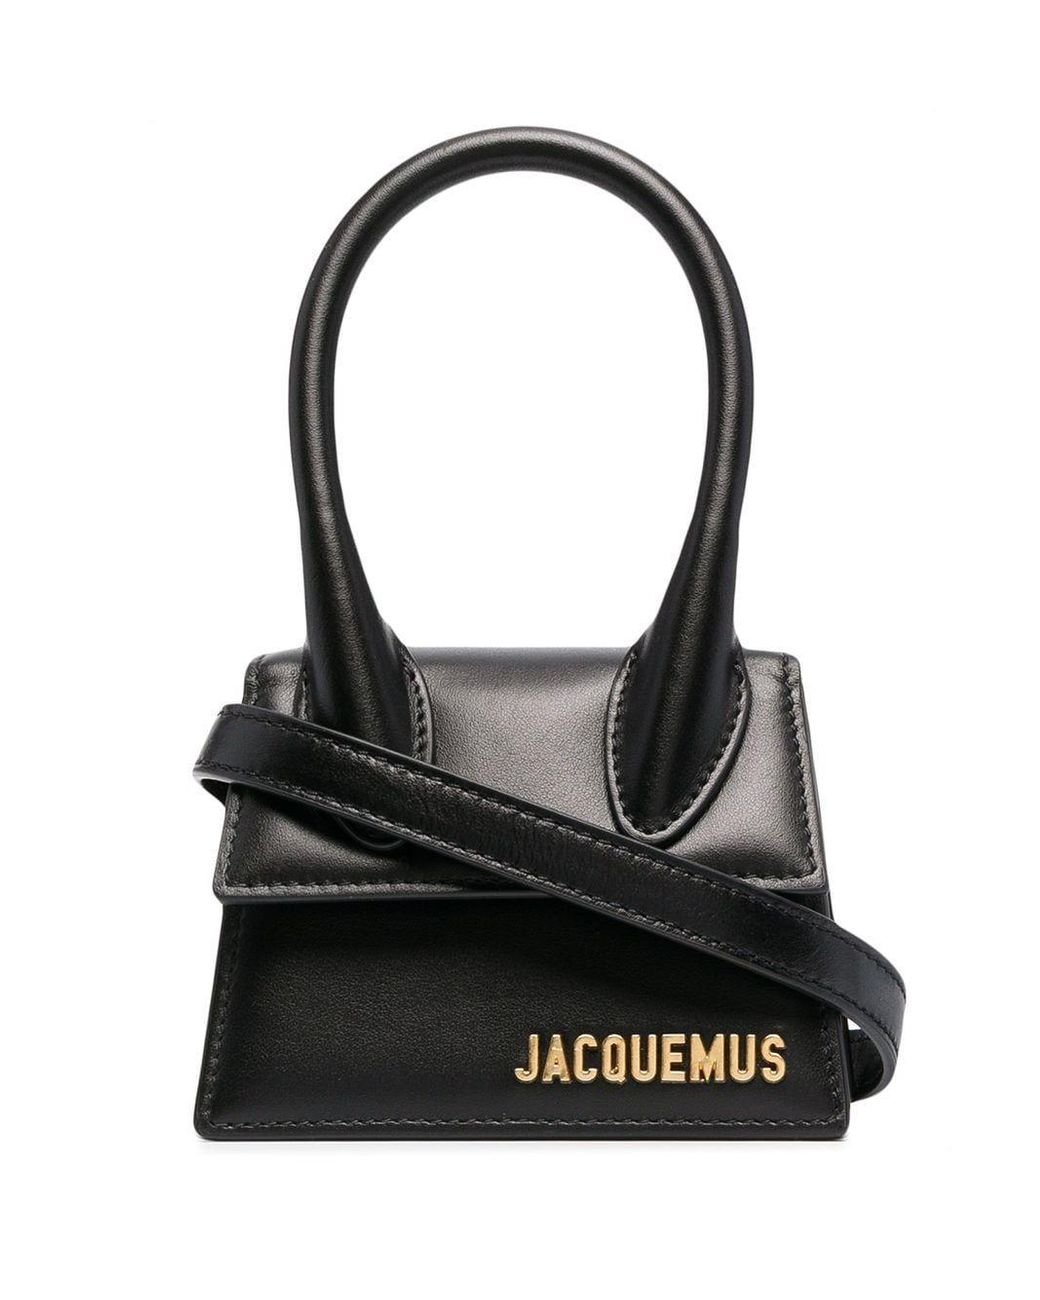 Jacquemus Leather Handbag in Black - Lyst